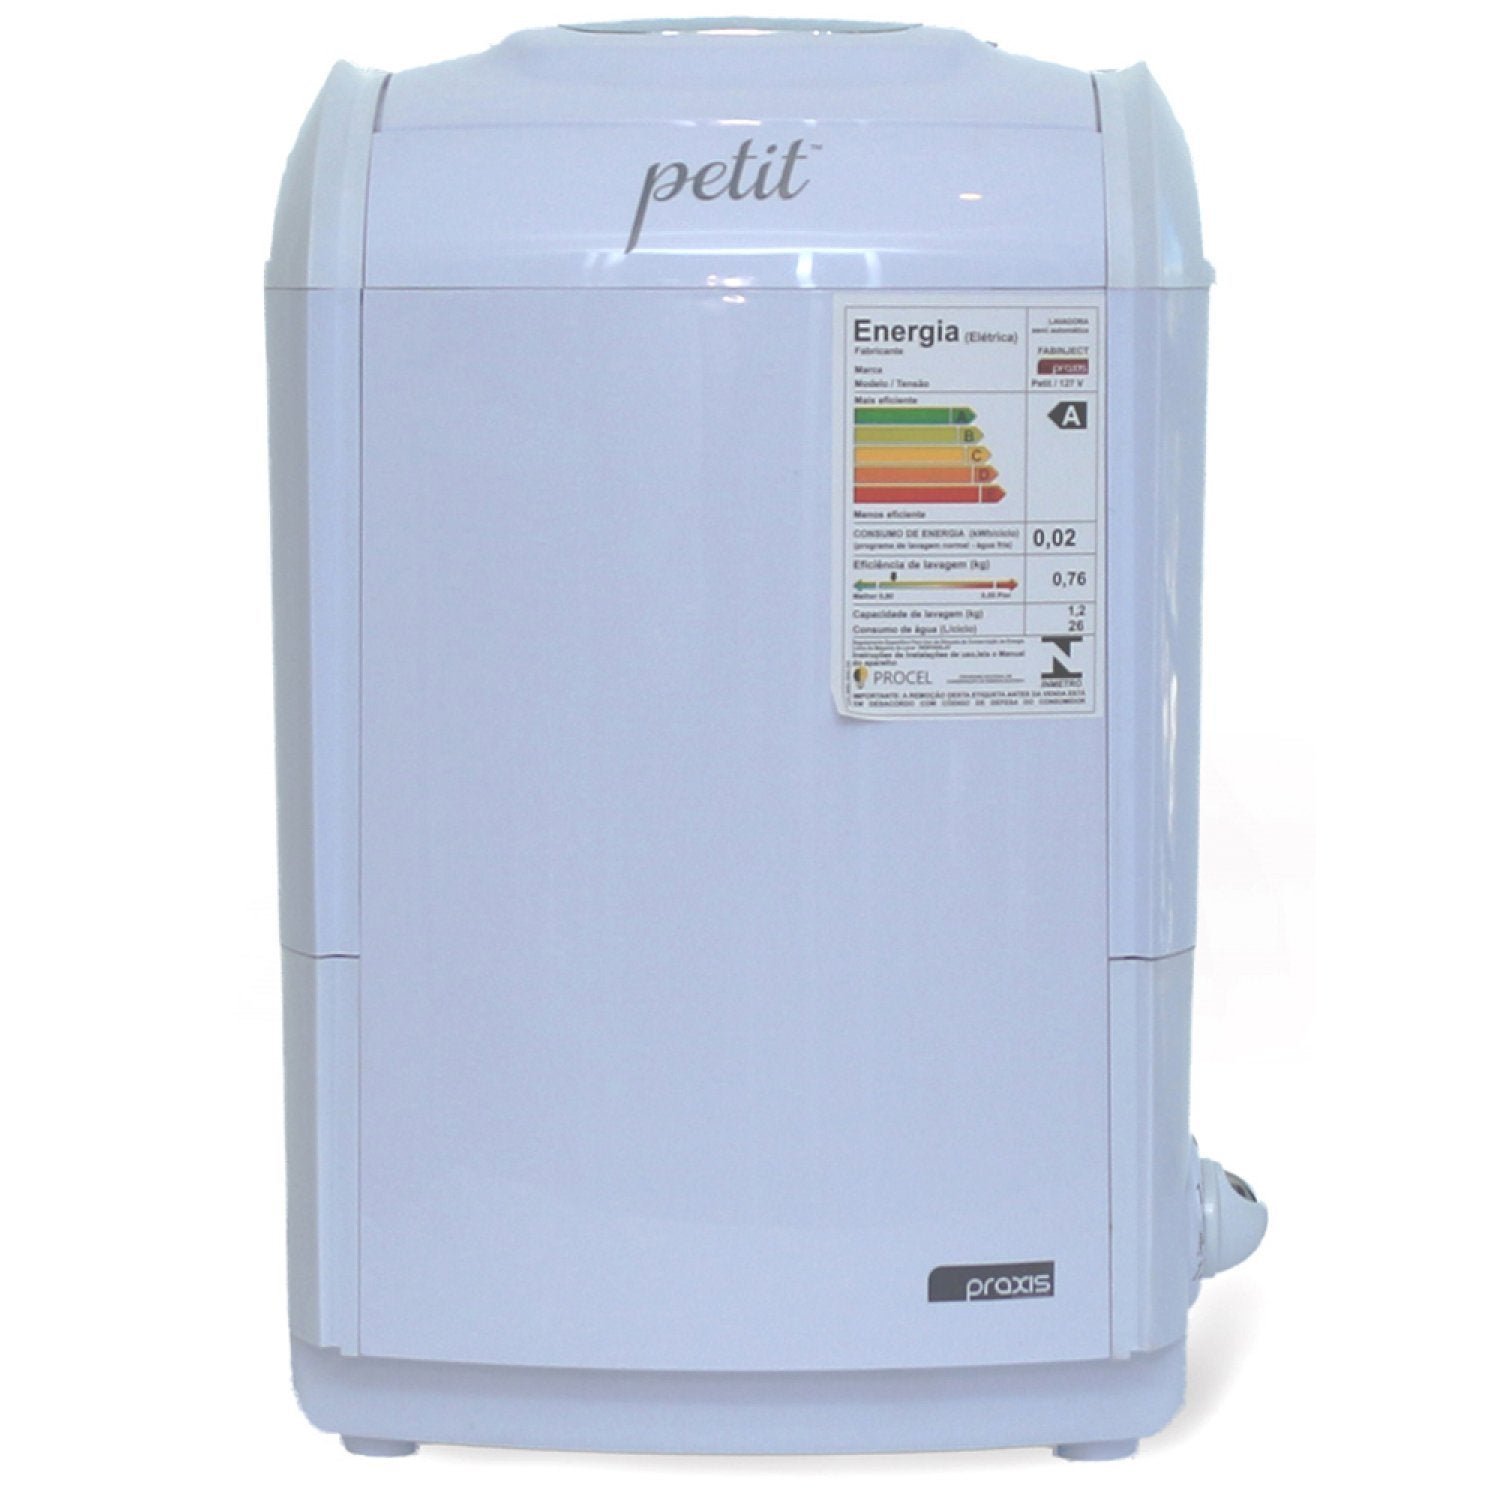 Máquina de Lavar Semi-Automática 1.2kg 110V Praxis Petit Grifit - 2